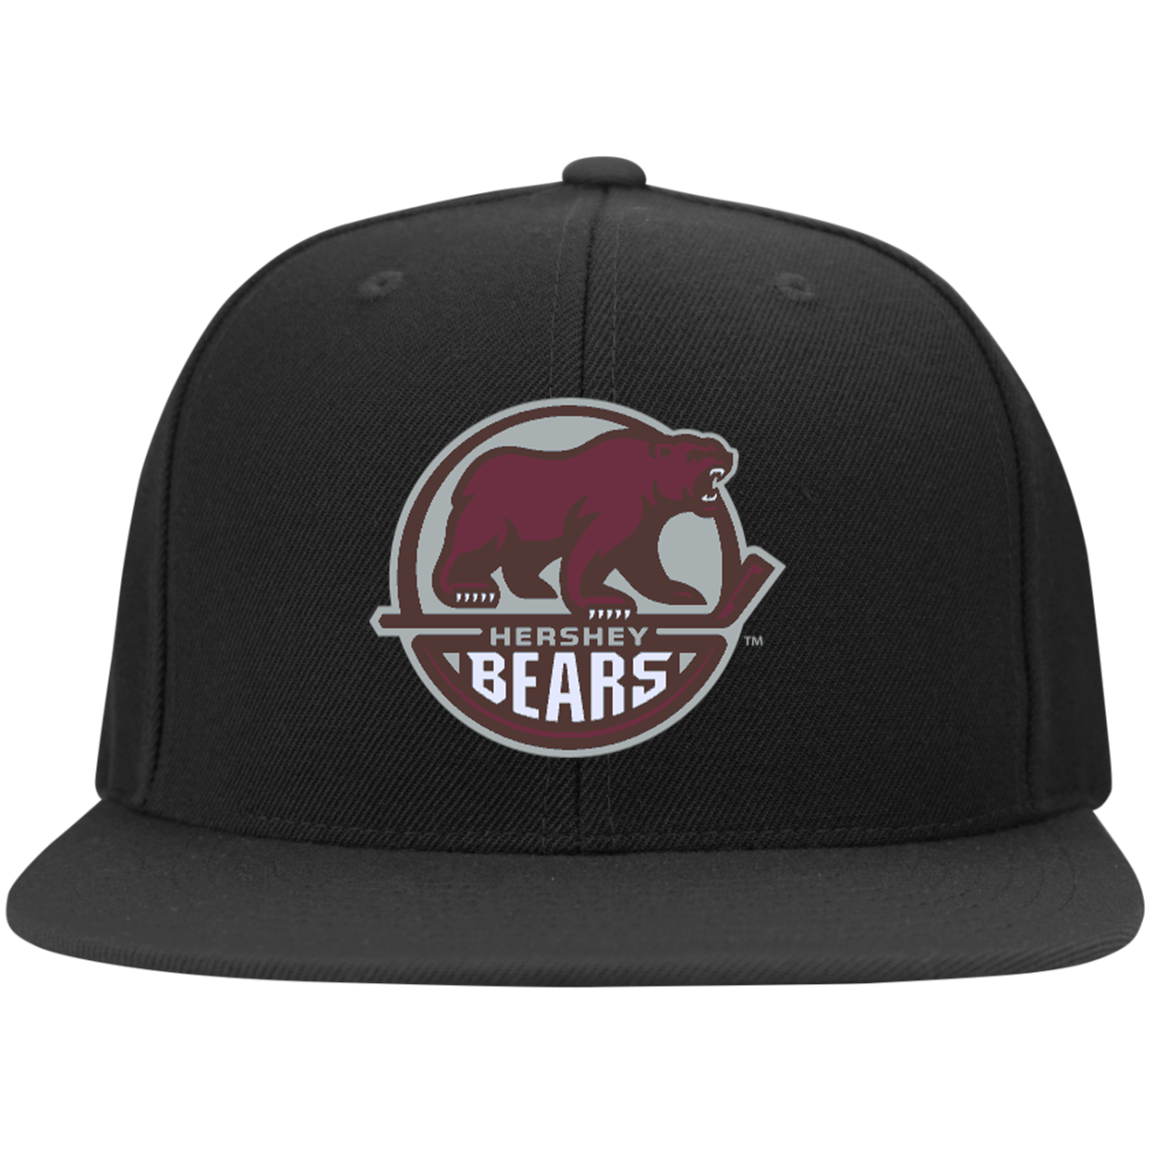 Hershey Bears Flat Bill High-Profile 